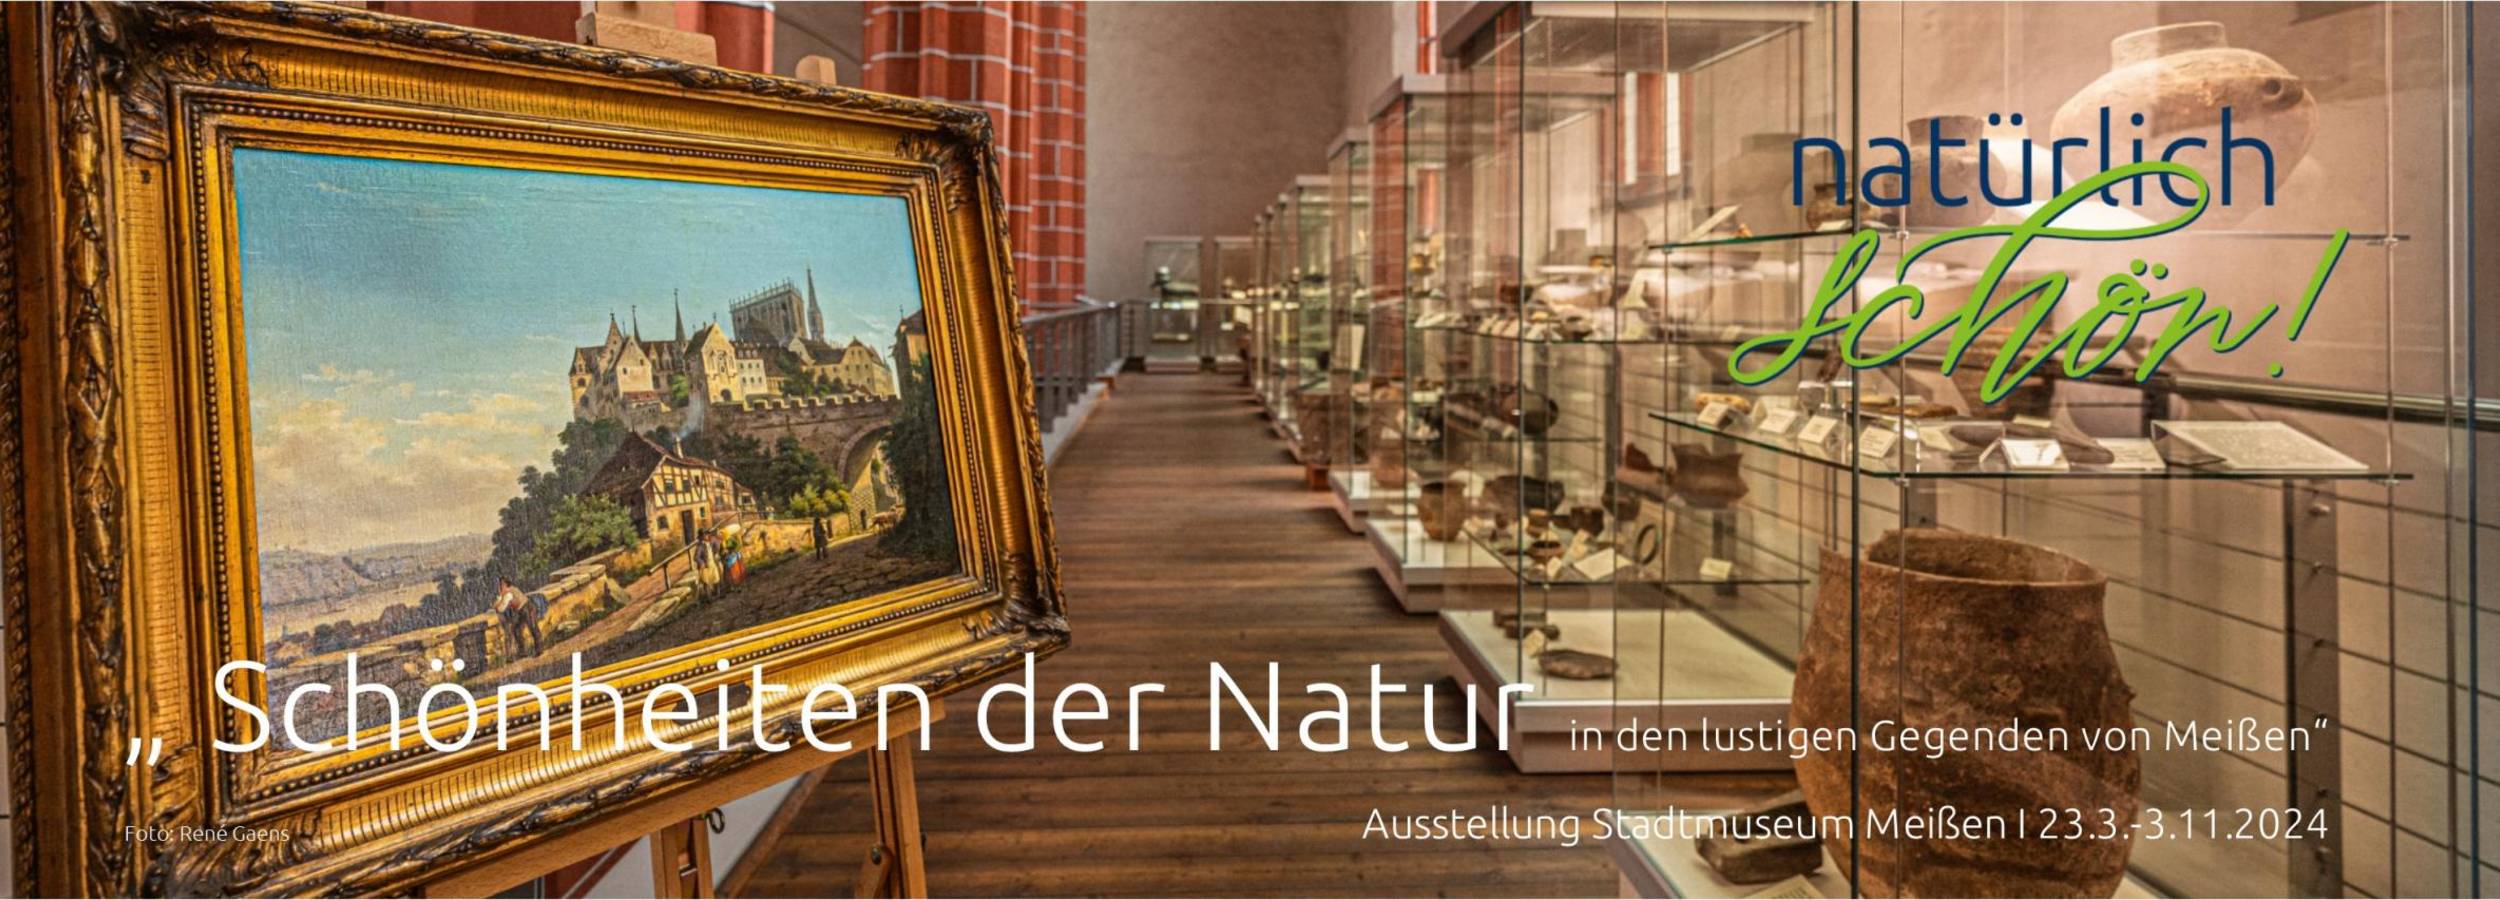 Schönheiten der Natur - Stadtmuseum Meißen